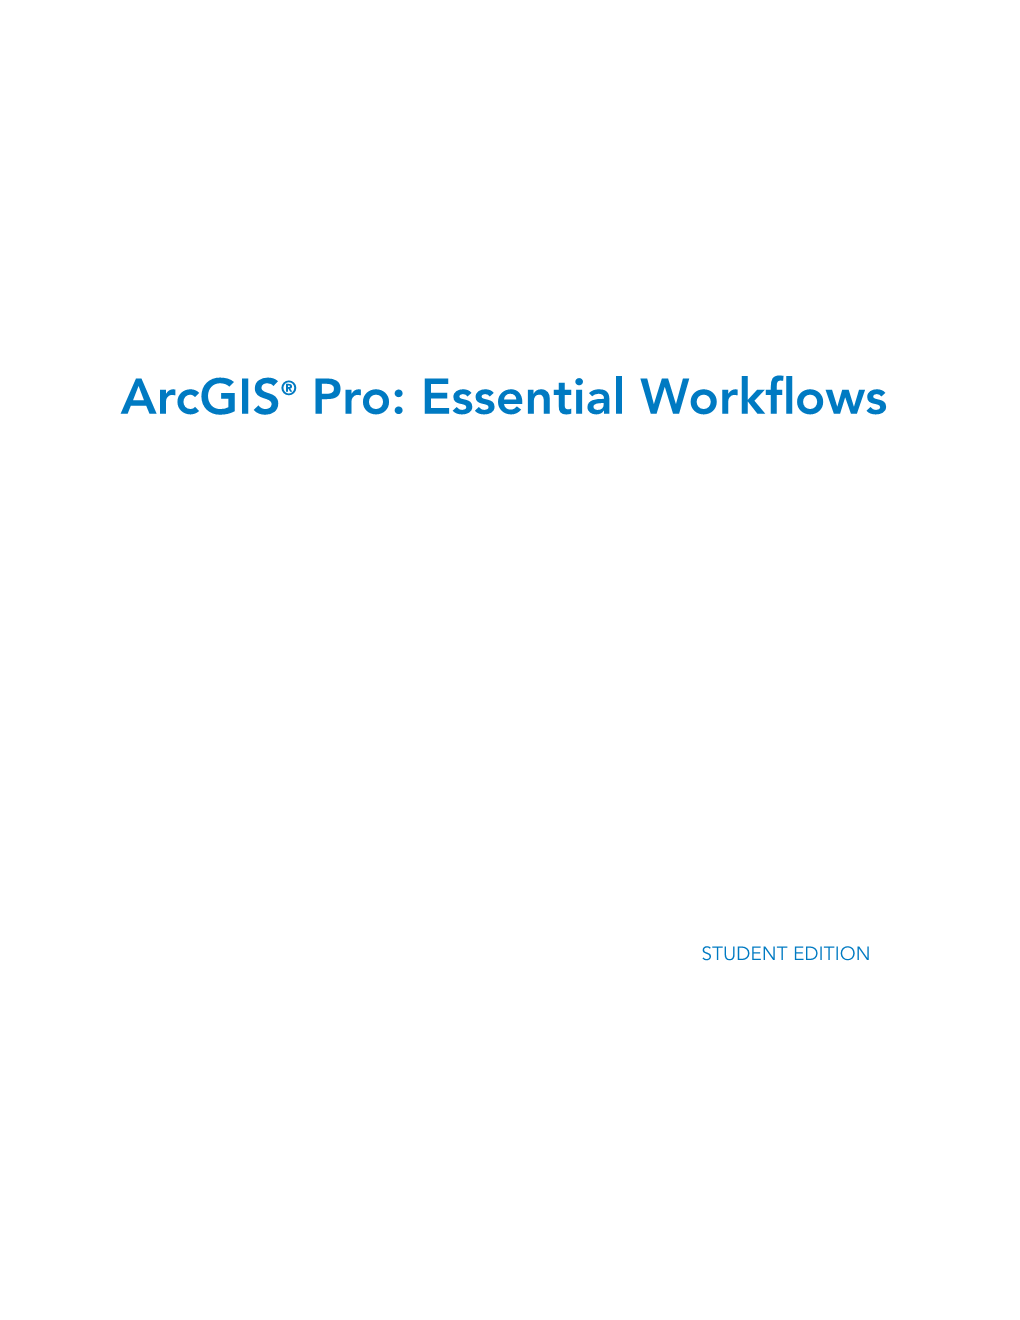 Arcgis" Pro: Essential Workflows